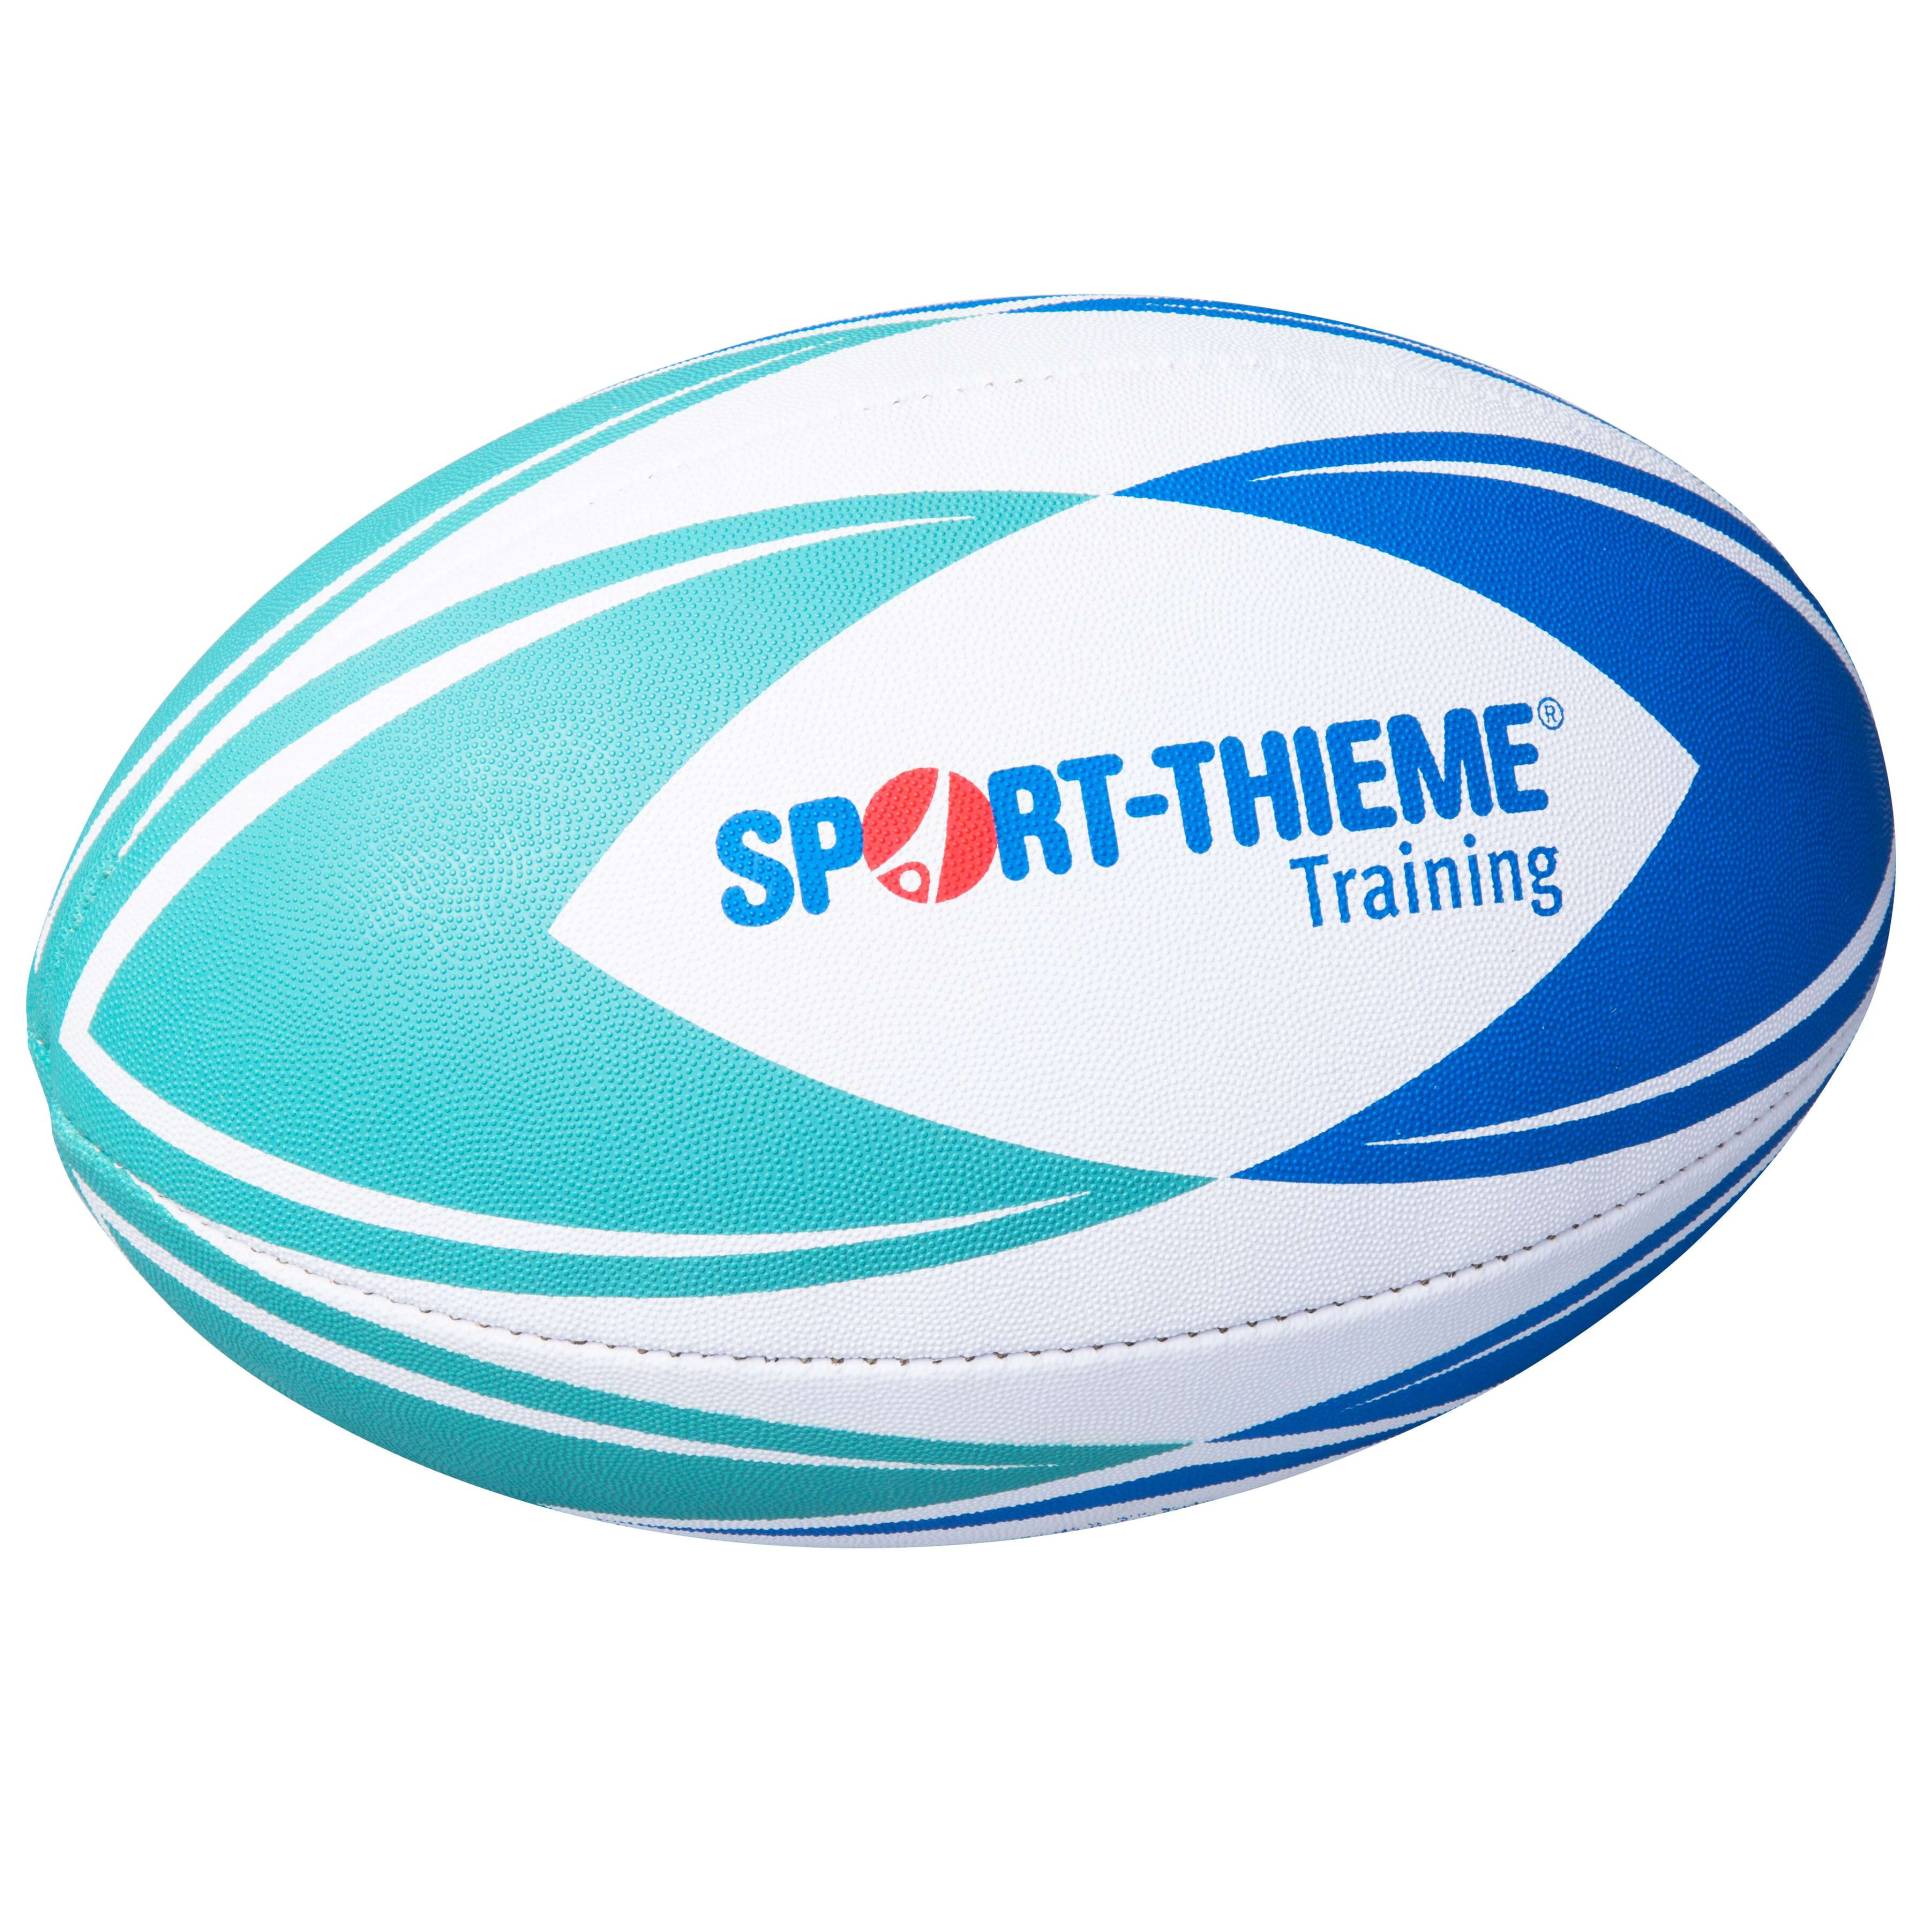 Sport-Thieme Rugbyball "Training", Größe 3 von Sport-Thieme